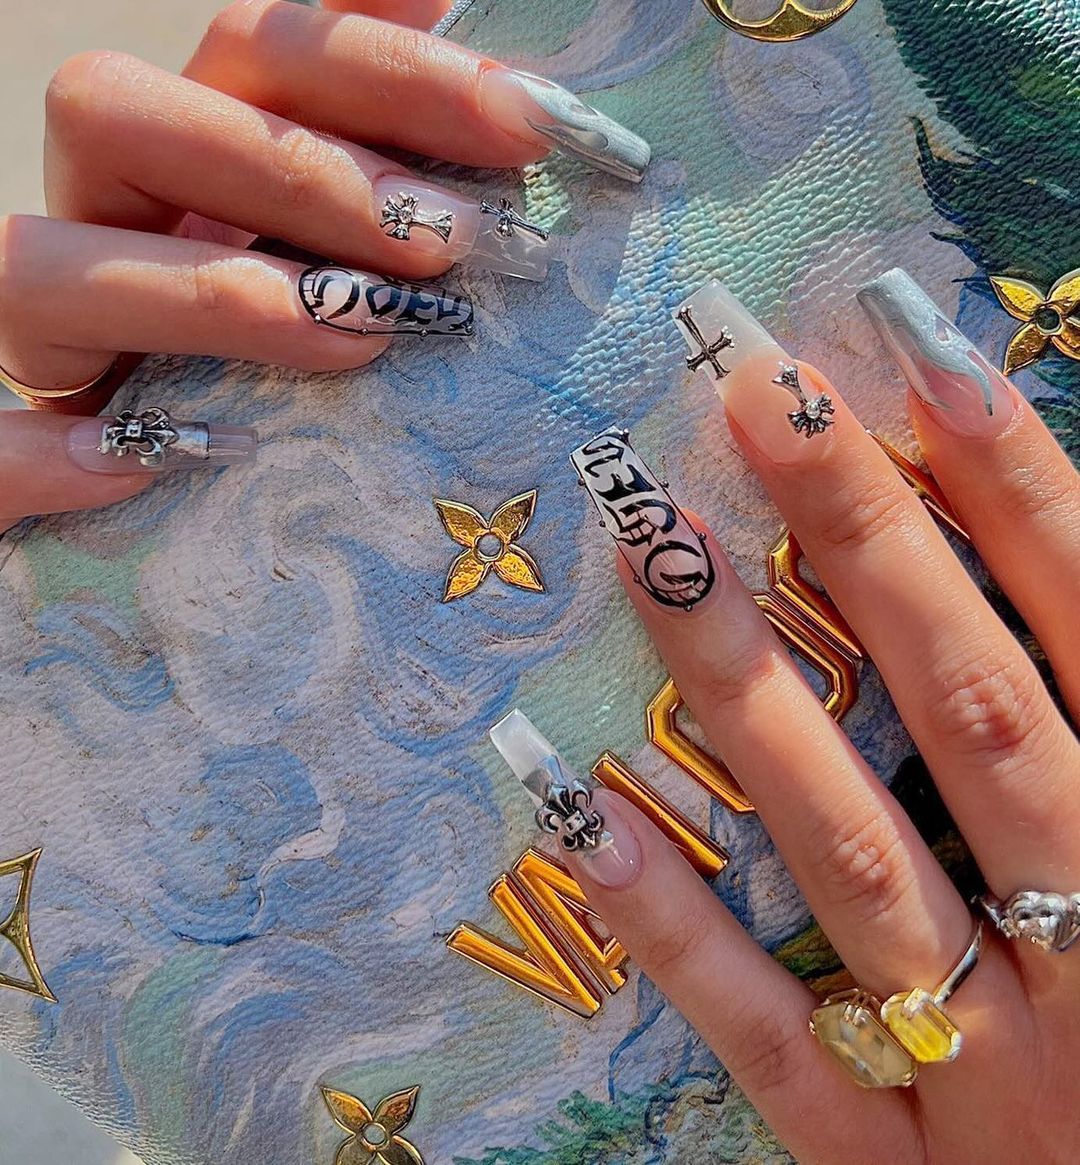 Pro Nails - Louis Vuitton nails!